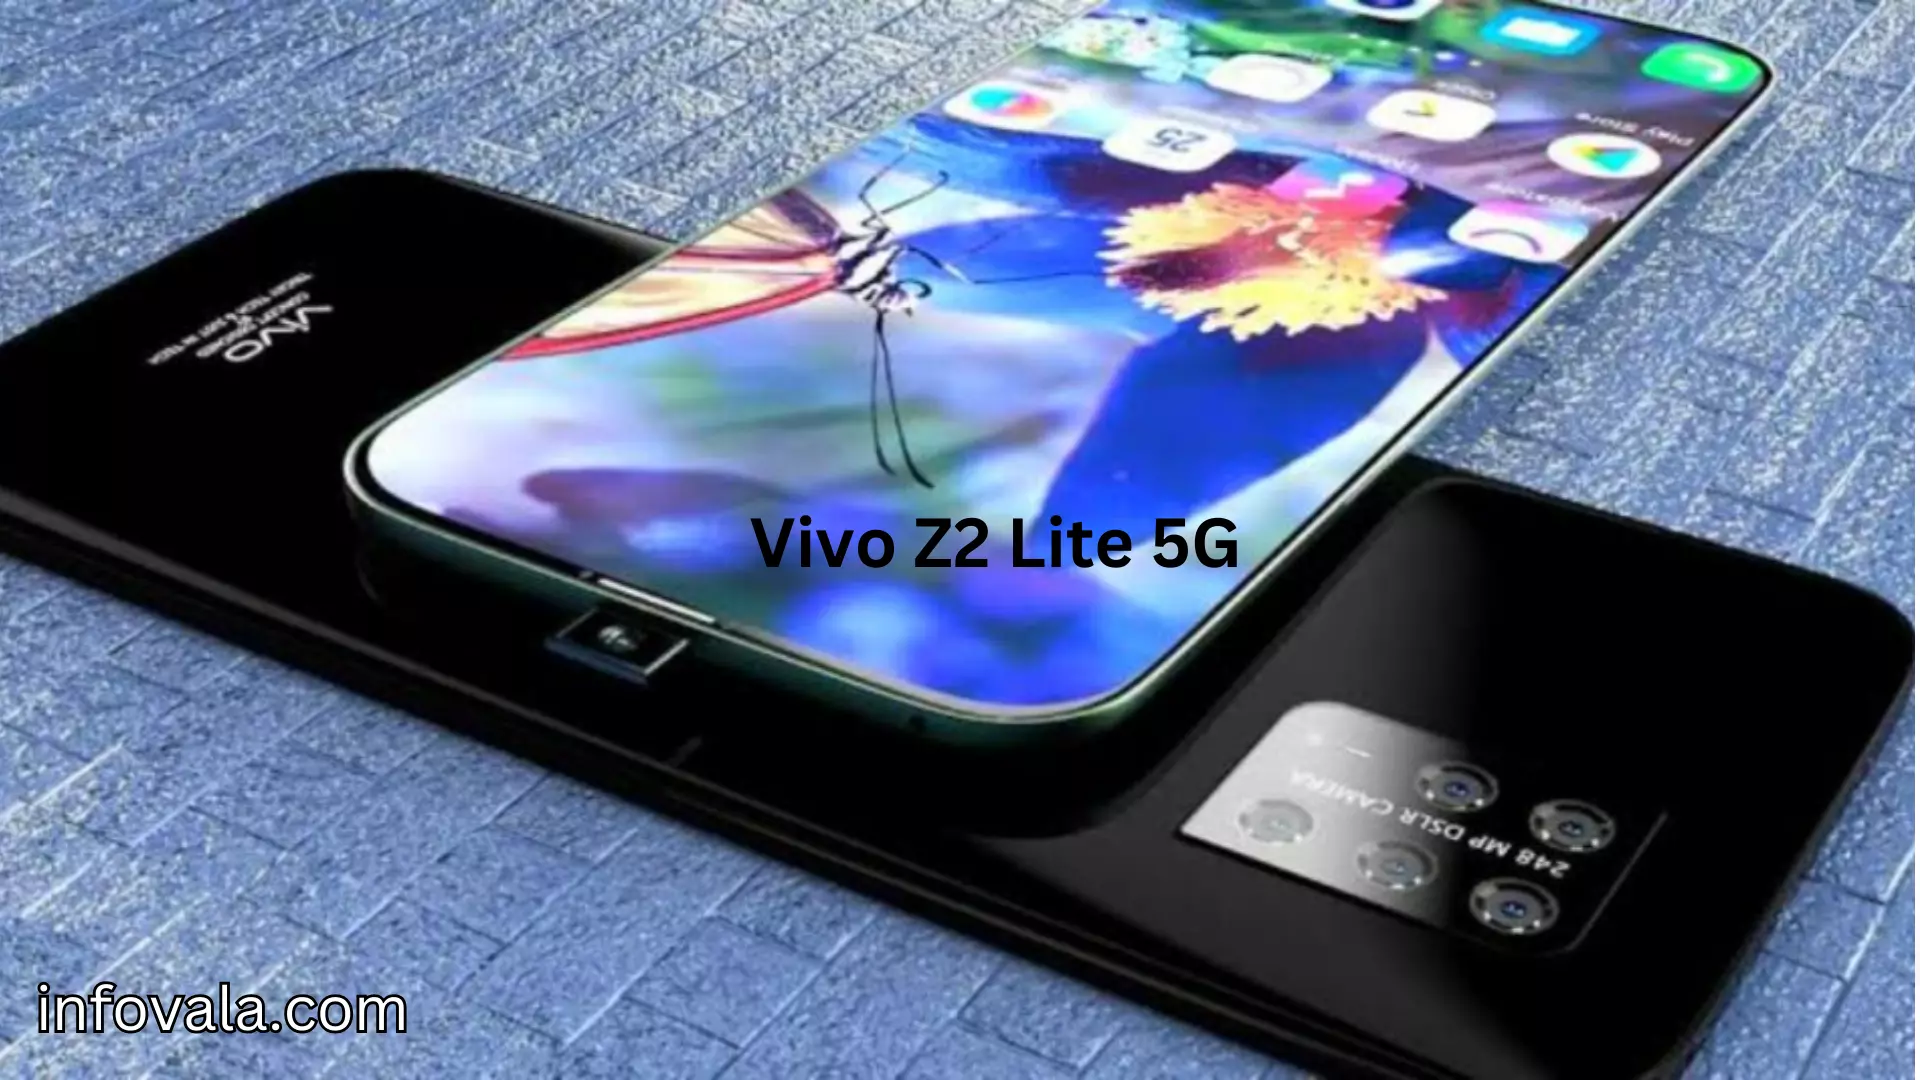 Vivo Z2 Lite 5G